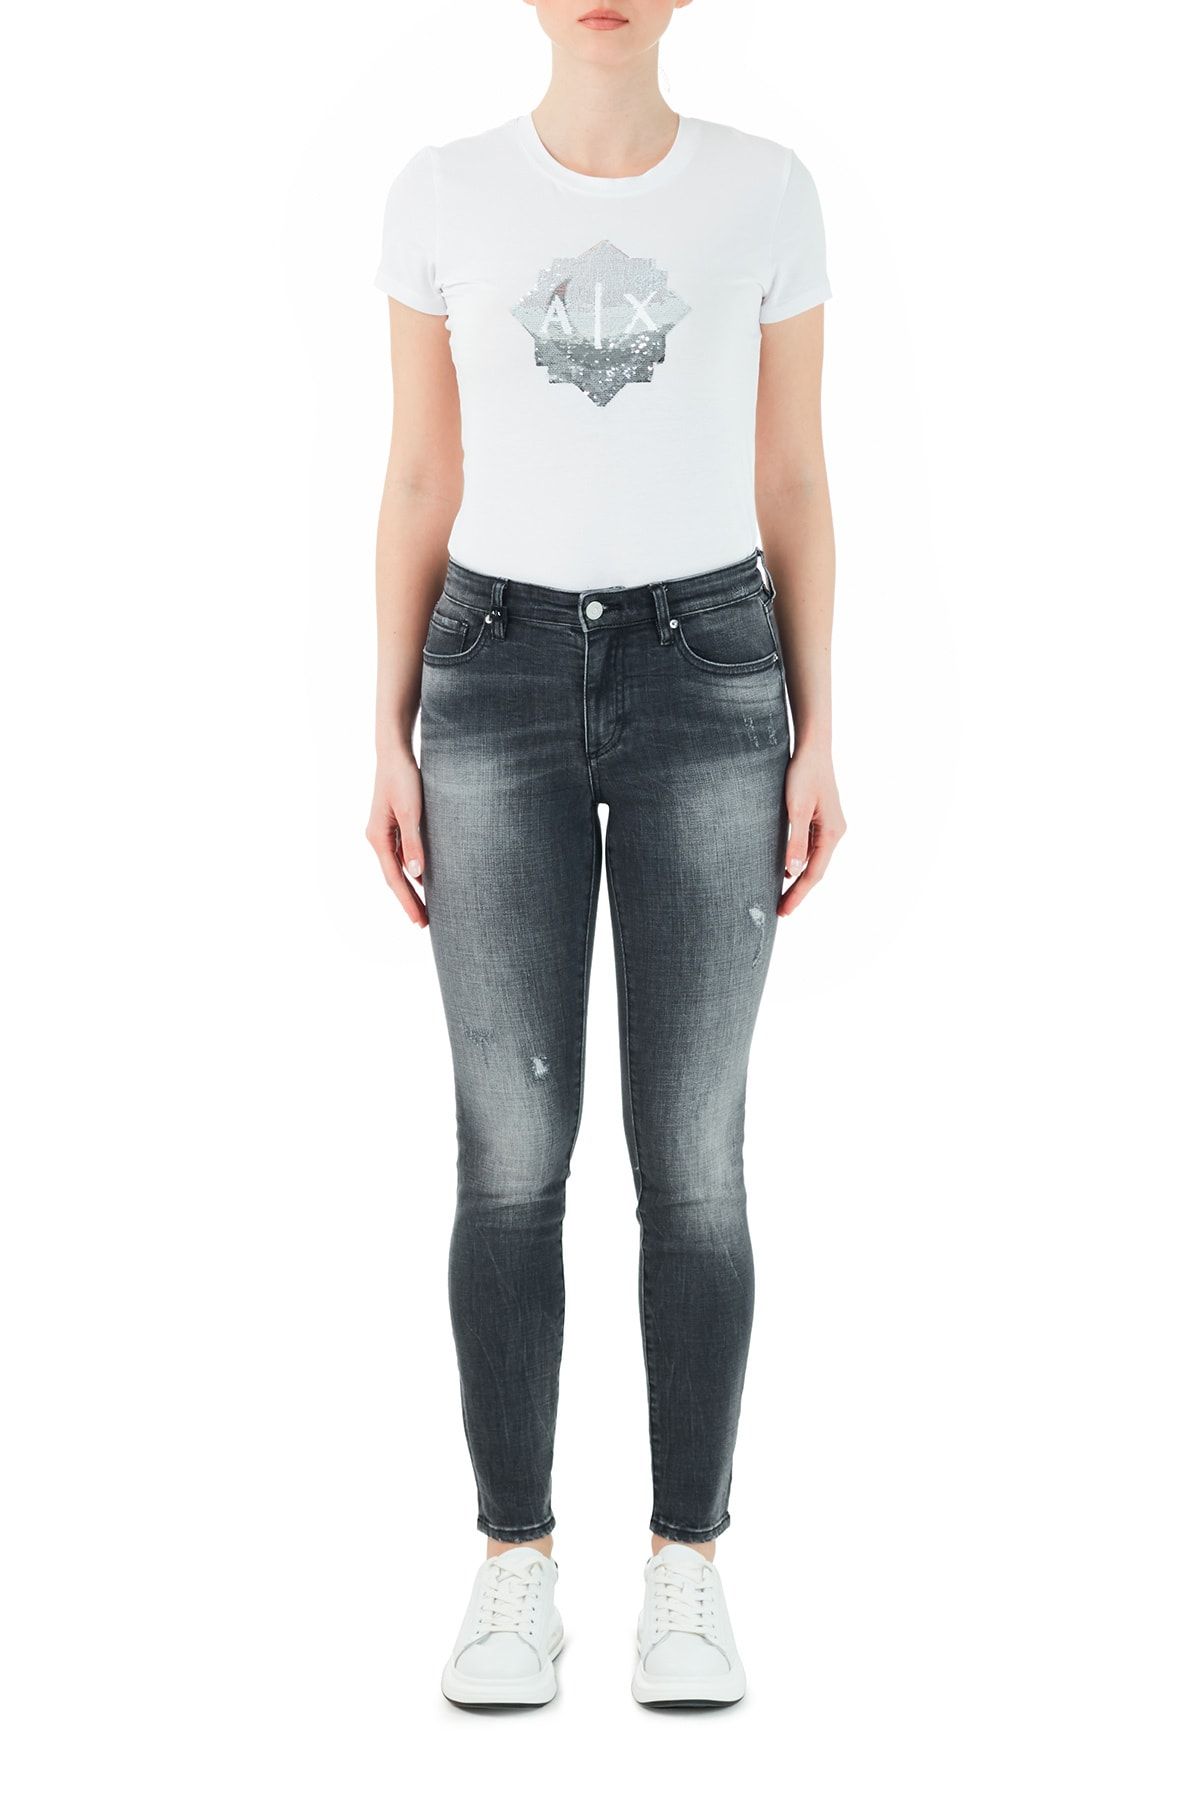 Armani Exchange Kadın Pamuklu Super Skinny J01 Jeans  Kot Pantolon 3kyj01 Y1mez 0903